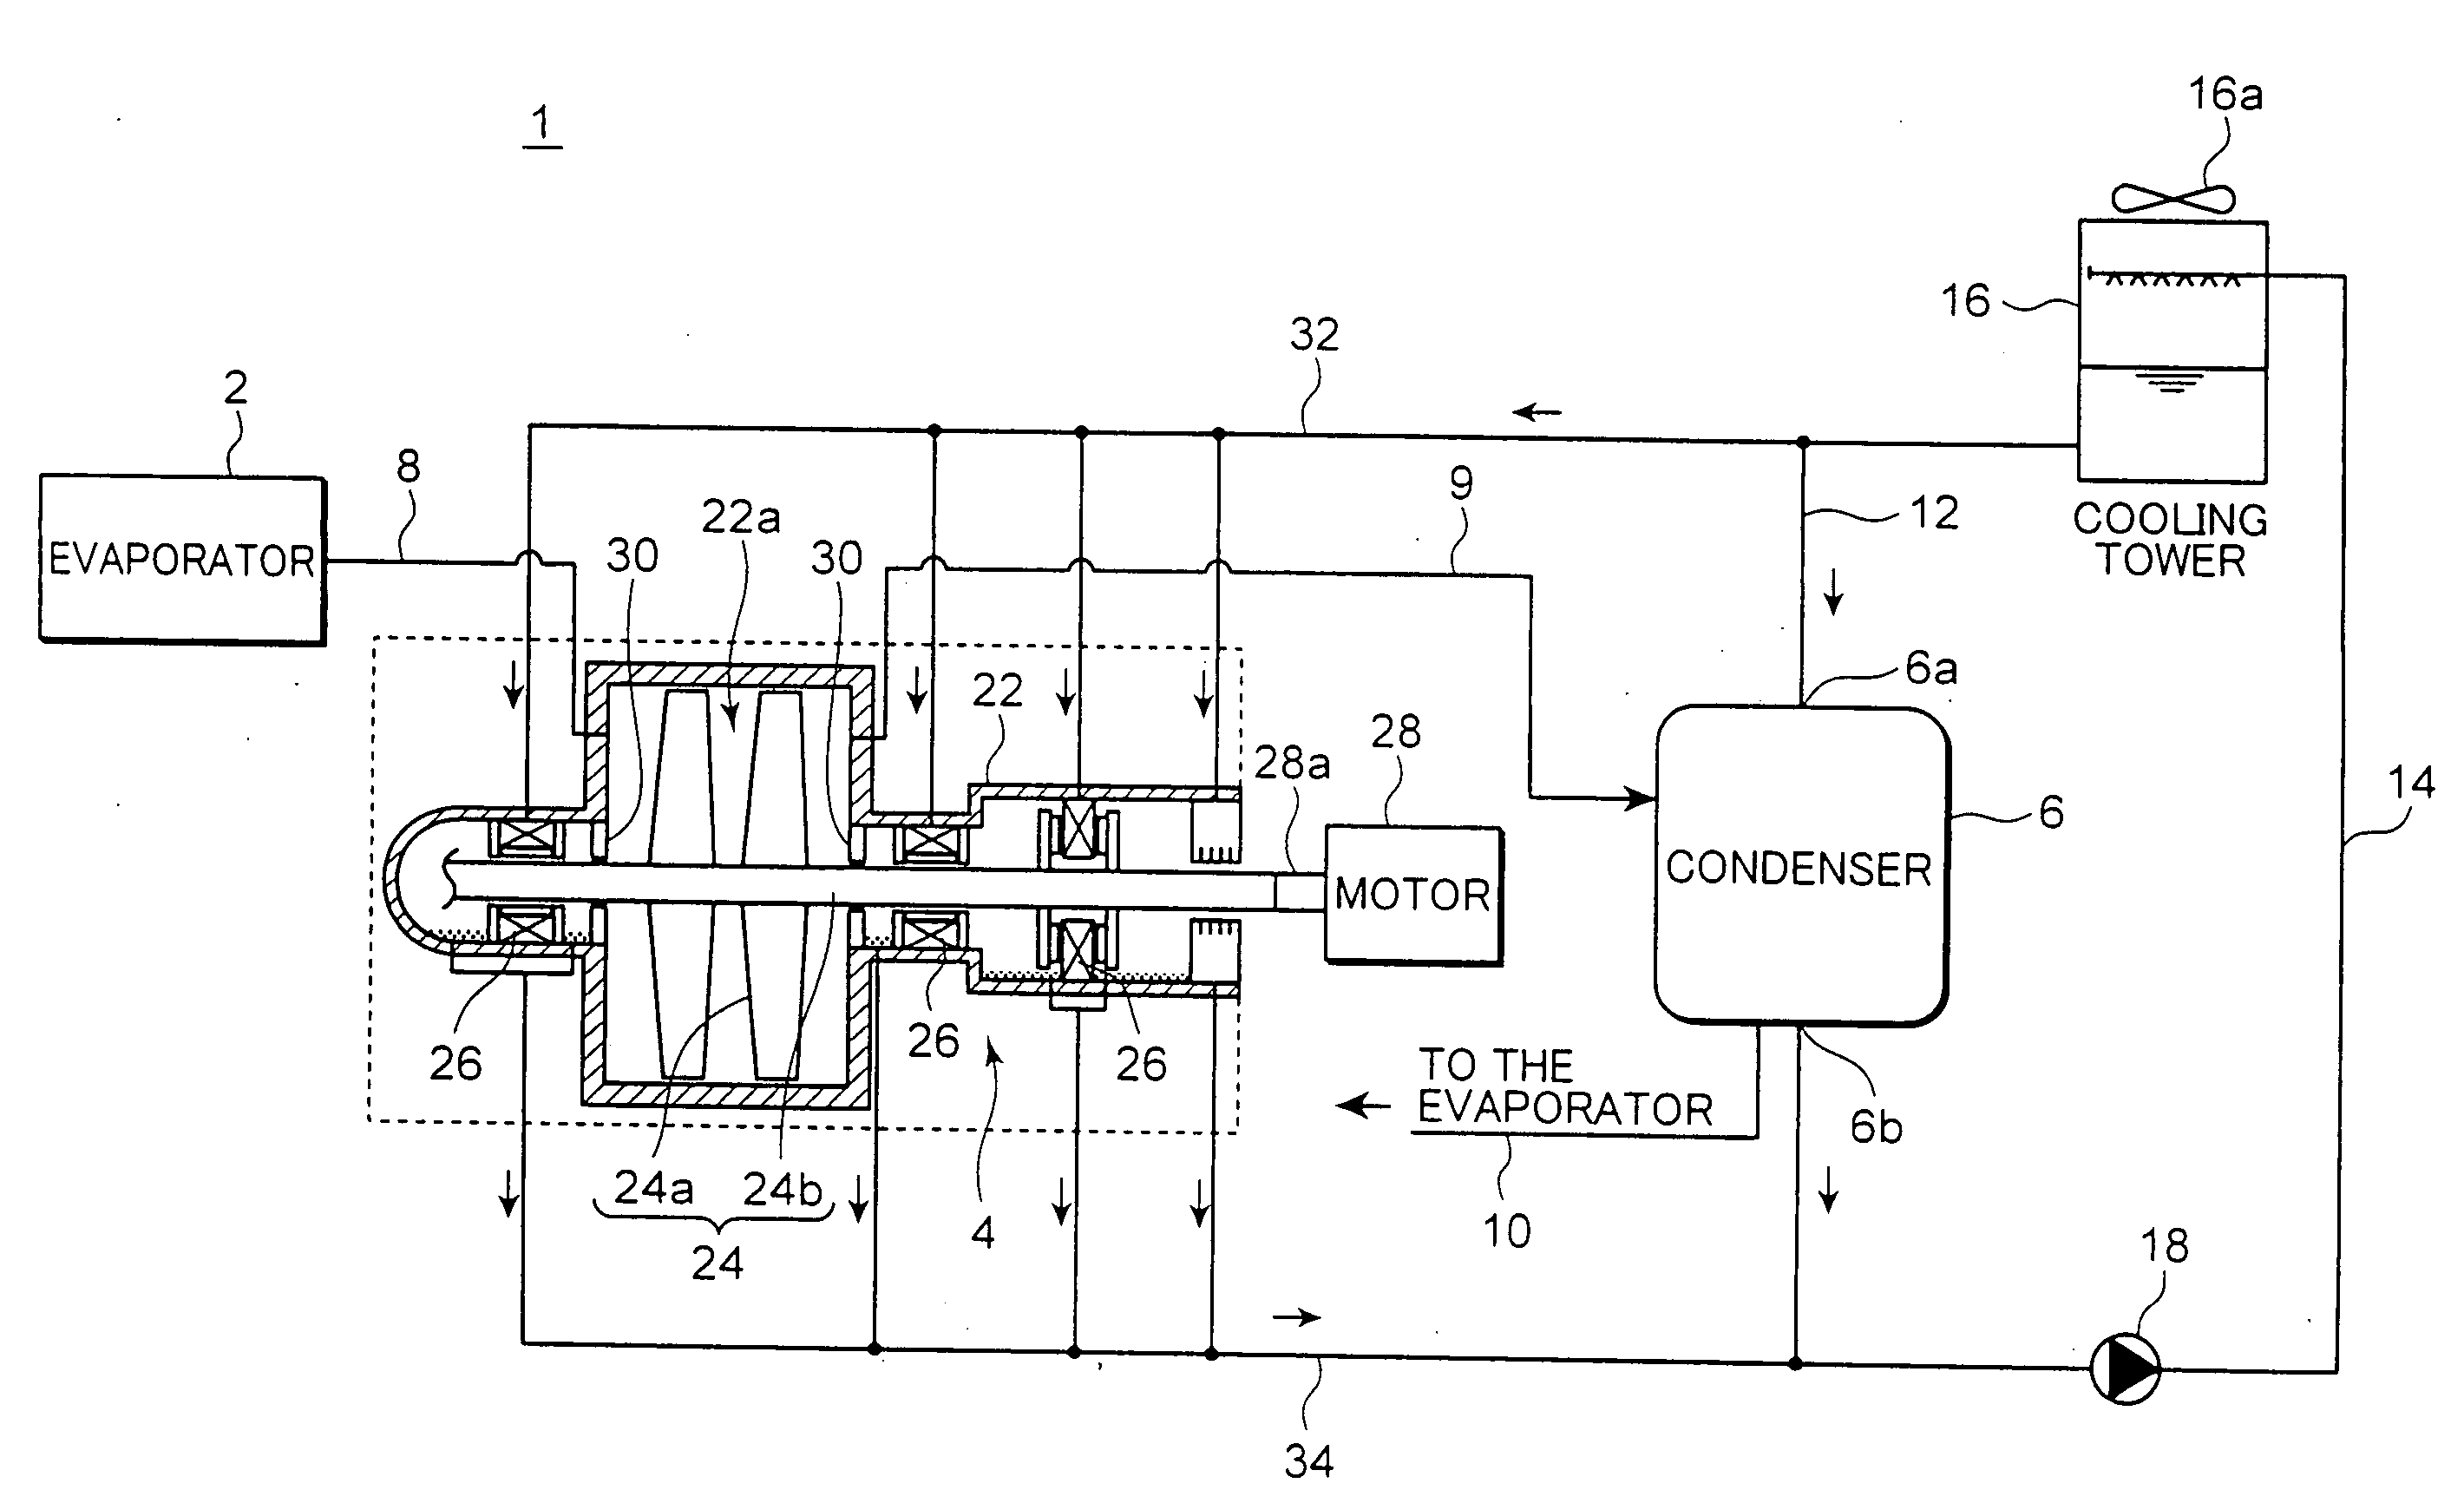 Compressor and refrigerating machine